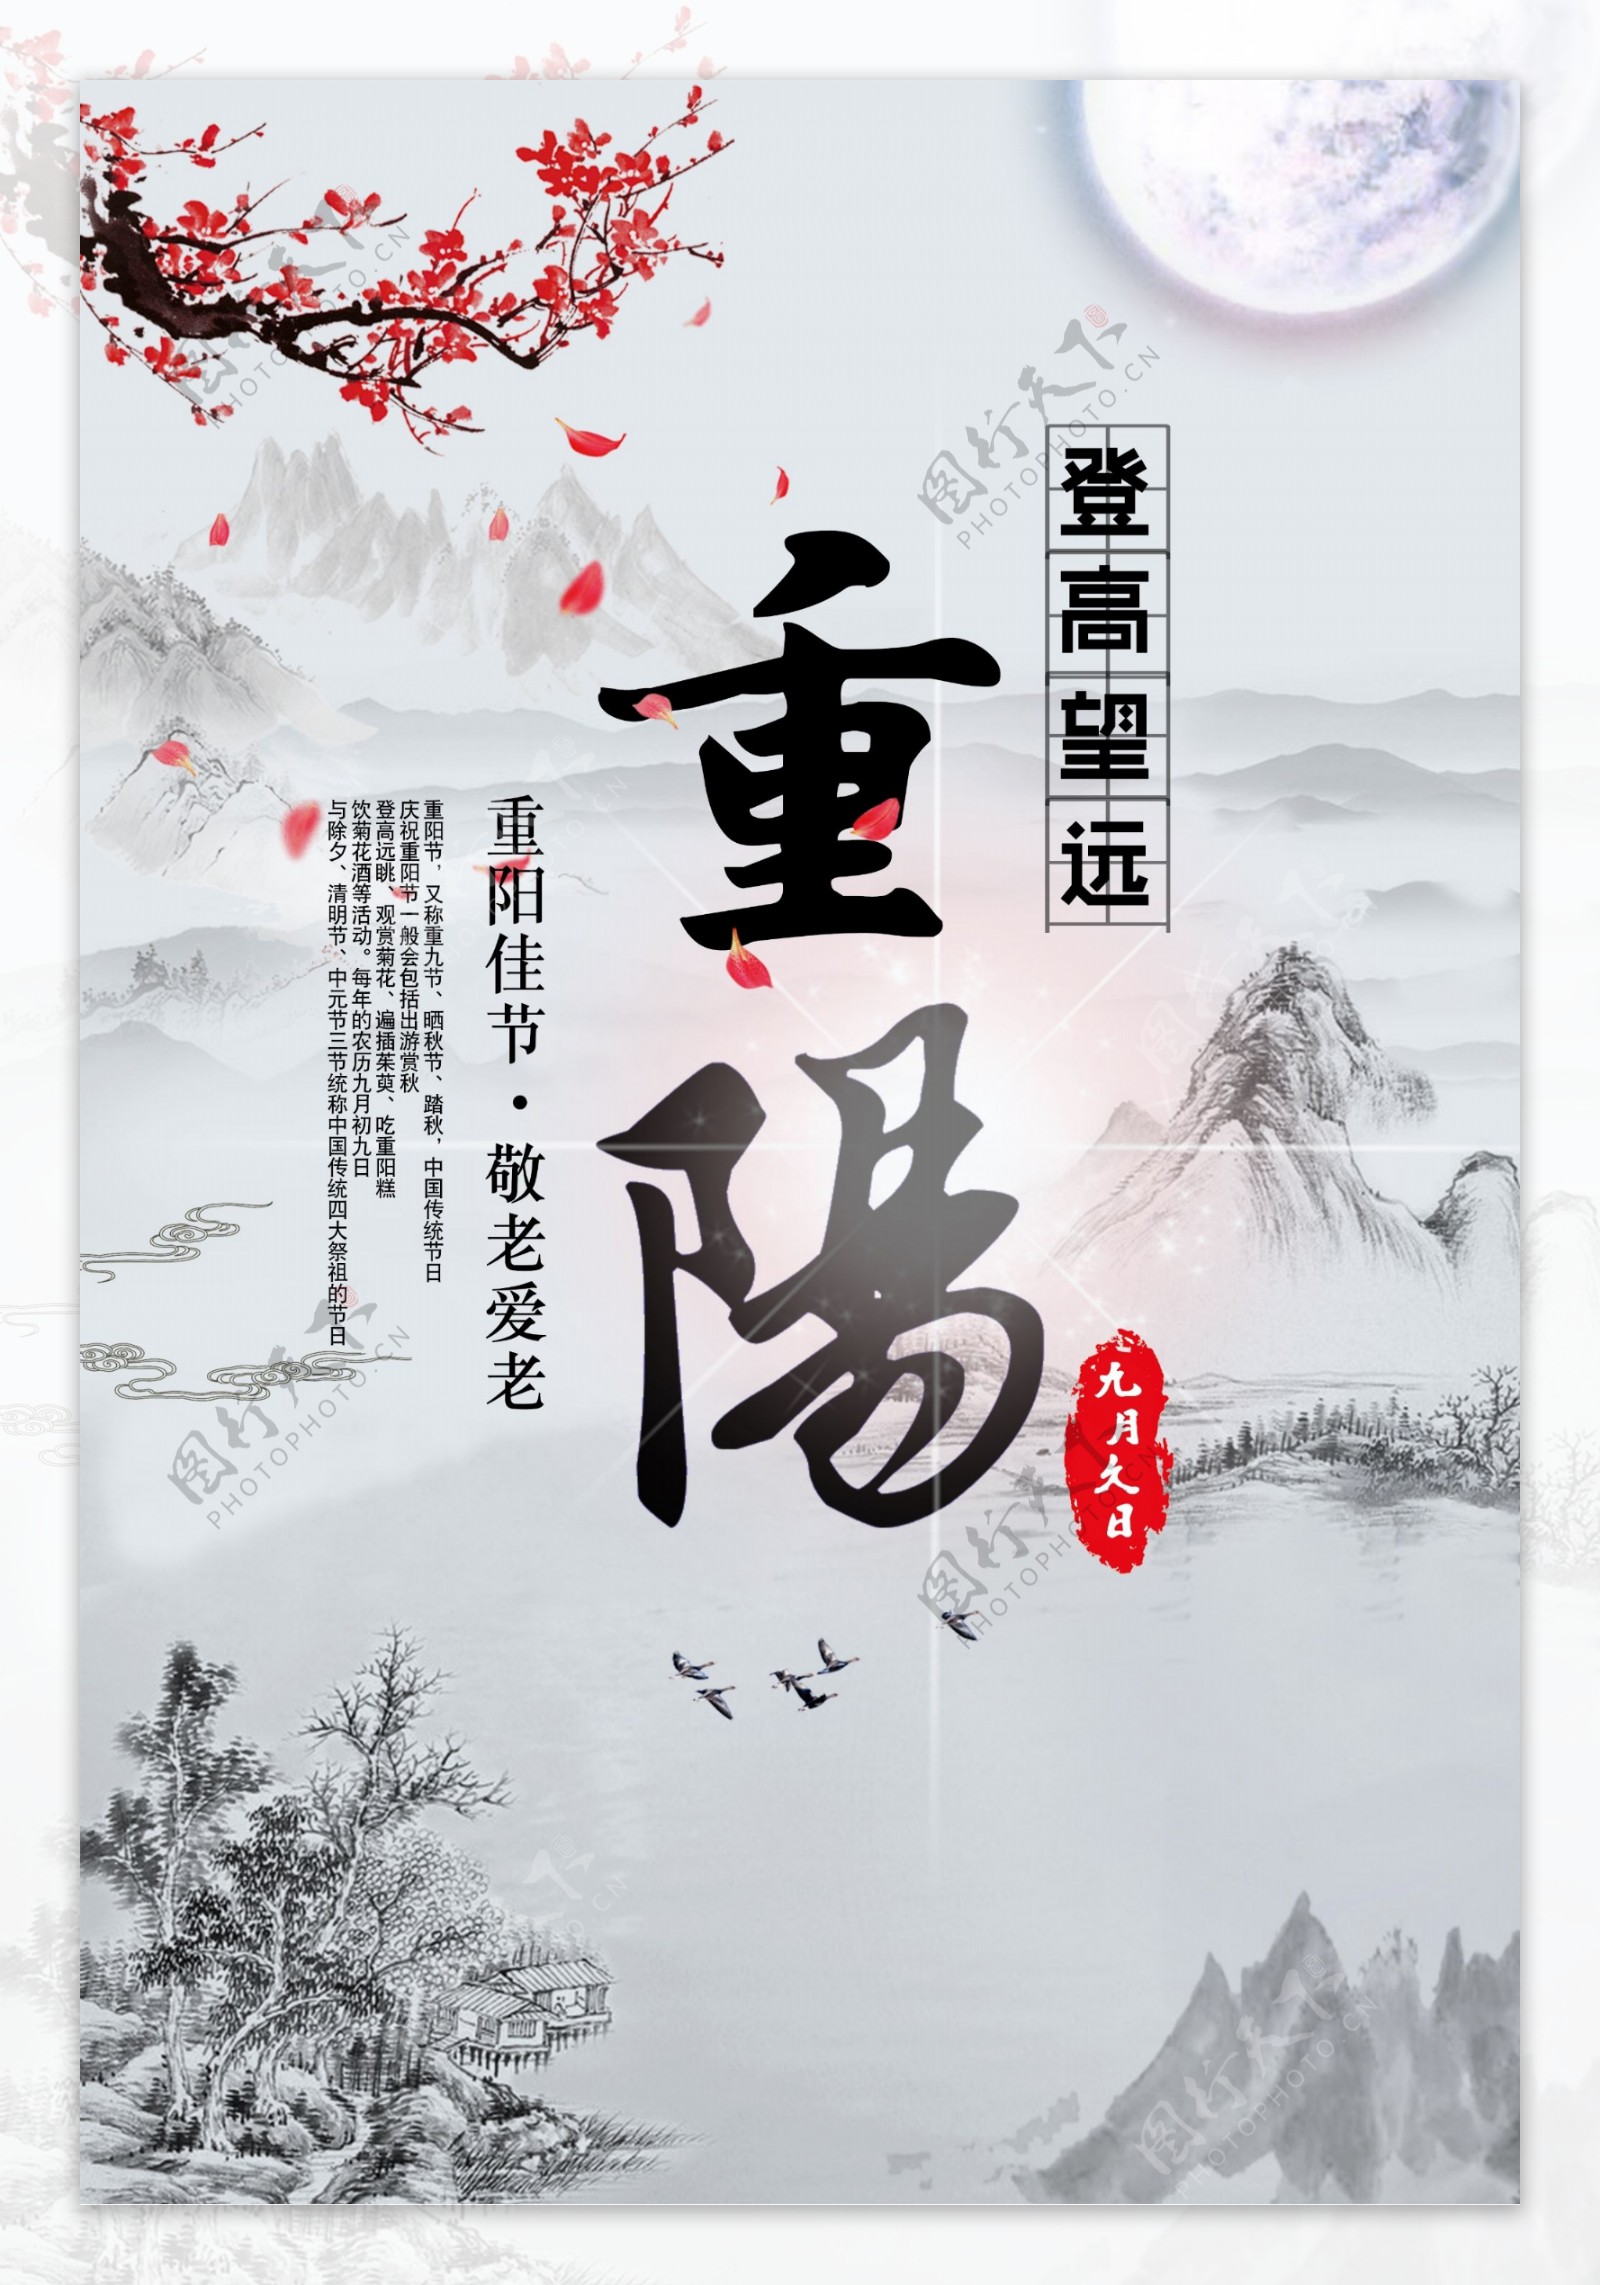 水墨山水画中国风重阳节佳节节日海报设计